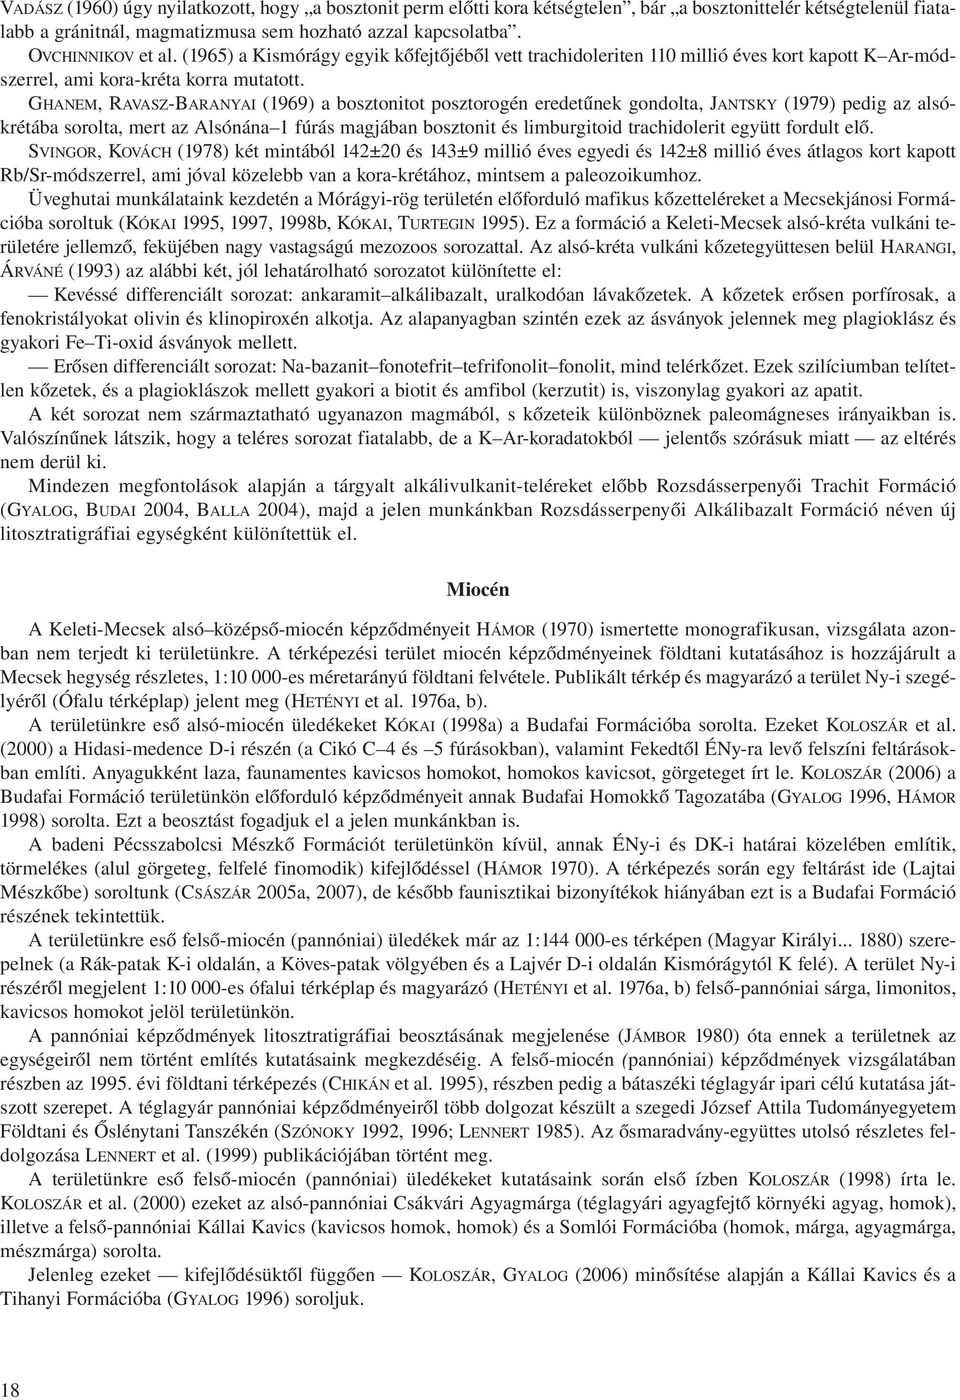 GHANEM, RAVASZ-BARANYAI (1969) a bosztonitot posztorogén eredetűnek gondolta, JANTSKY (1979) pedig az alsókrétába sorolta, mert az Alsónána 1 fúrás magjában bosztonit és limburgitoid trachidolerit